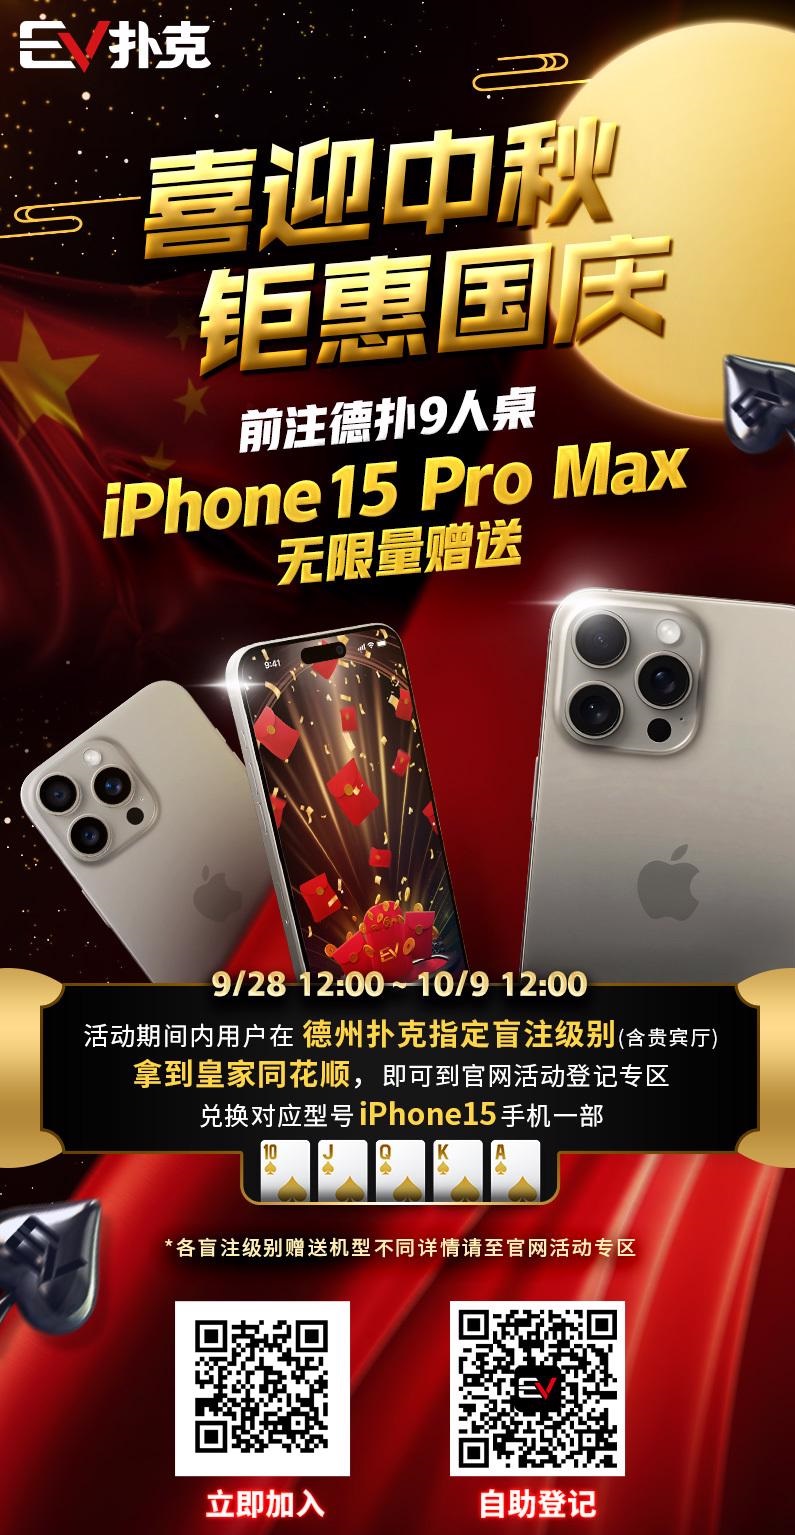 【APL扑克】iPhone15 Pro Max&#8221;无限量赠送&#8221;！最实用v.s最荣耀～盘点那些特别的冠军奖励